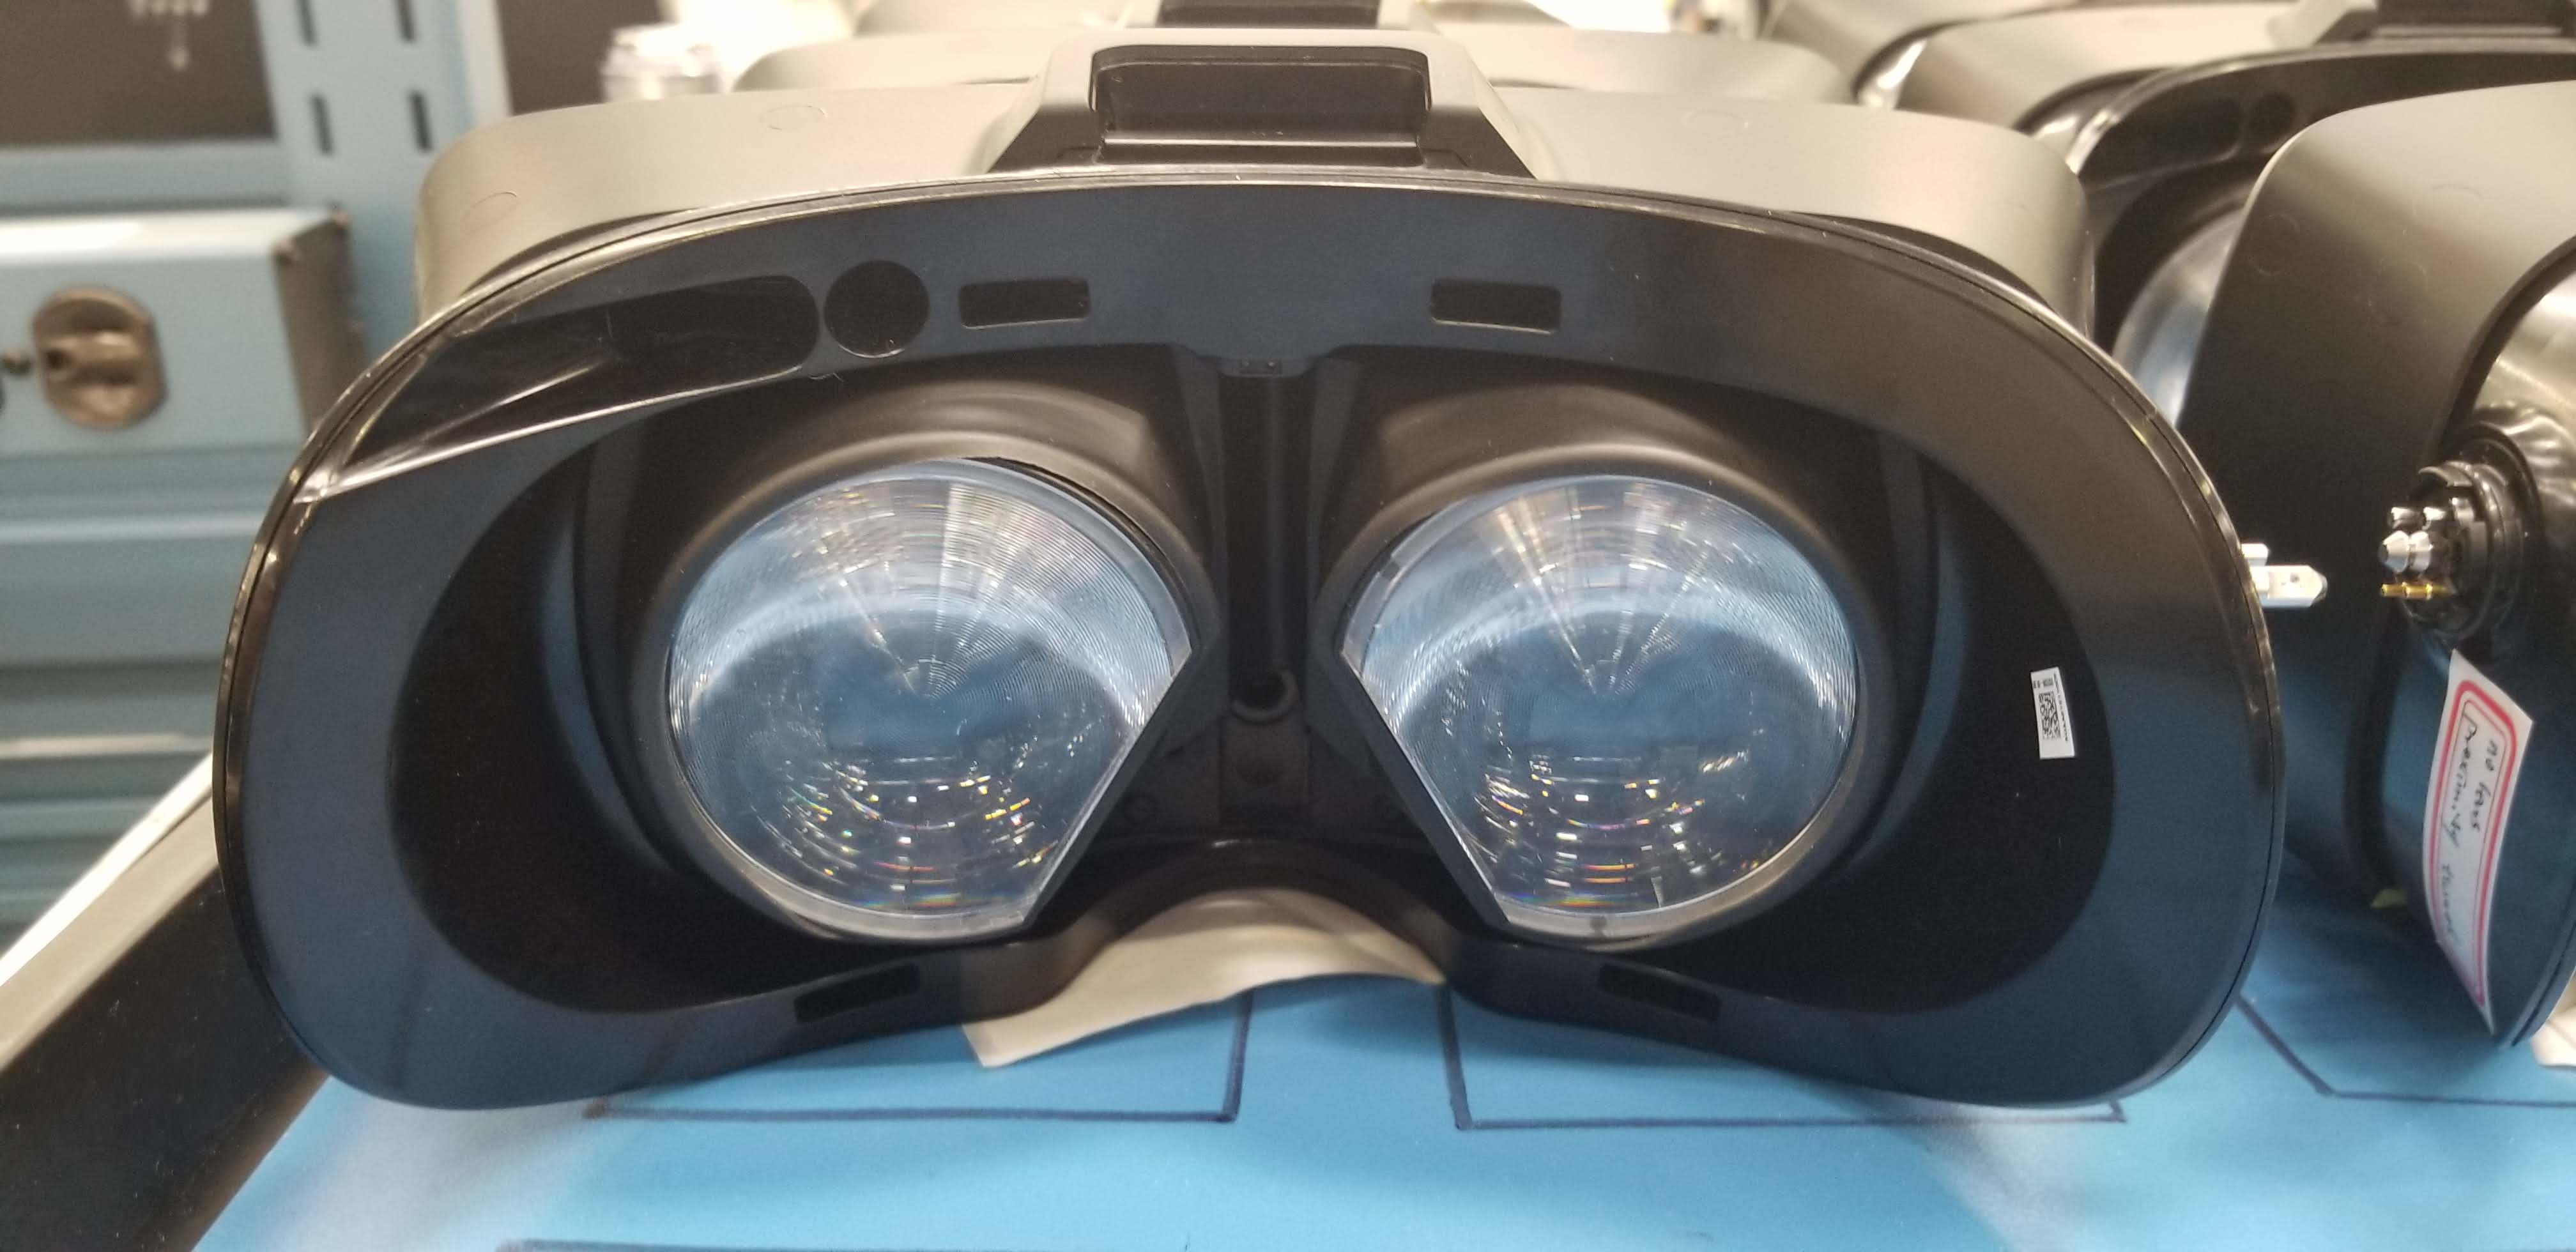 可能会有VR《半条命》？泄露图传出V社正在设计自己的VR 